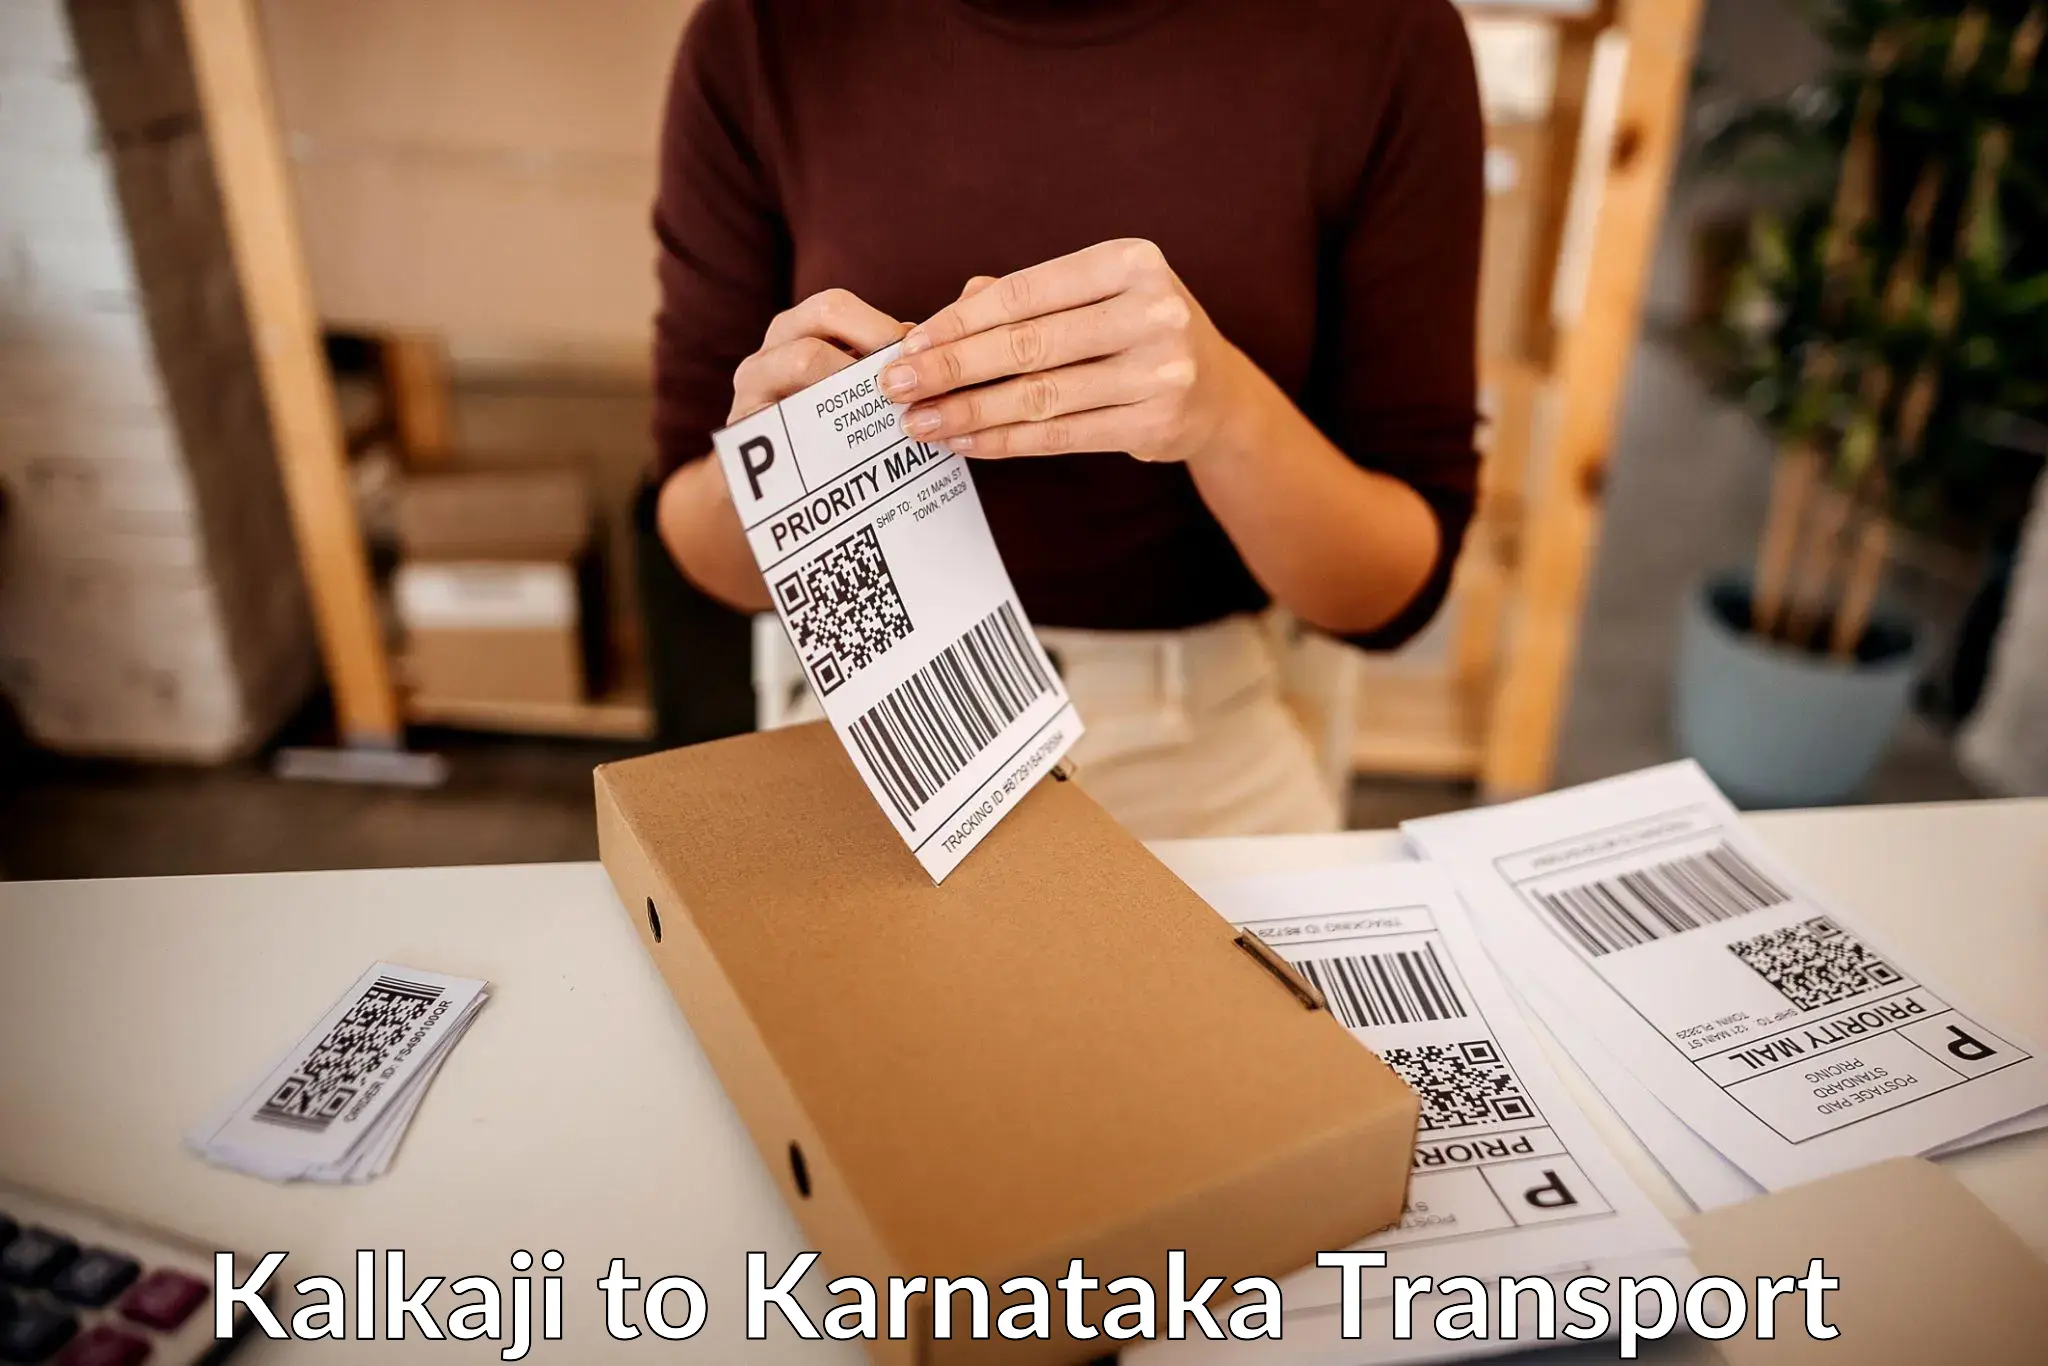 All India transport service Kalkaji to Kanakapura